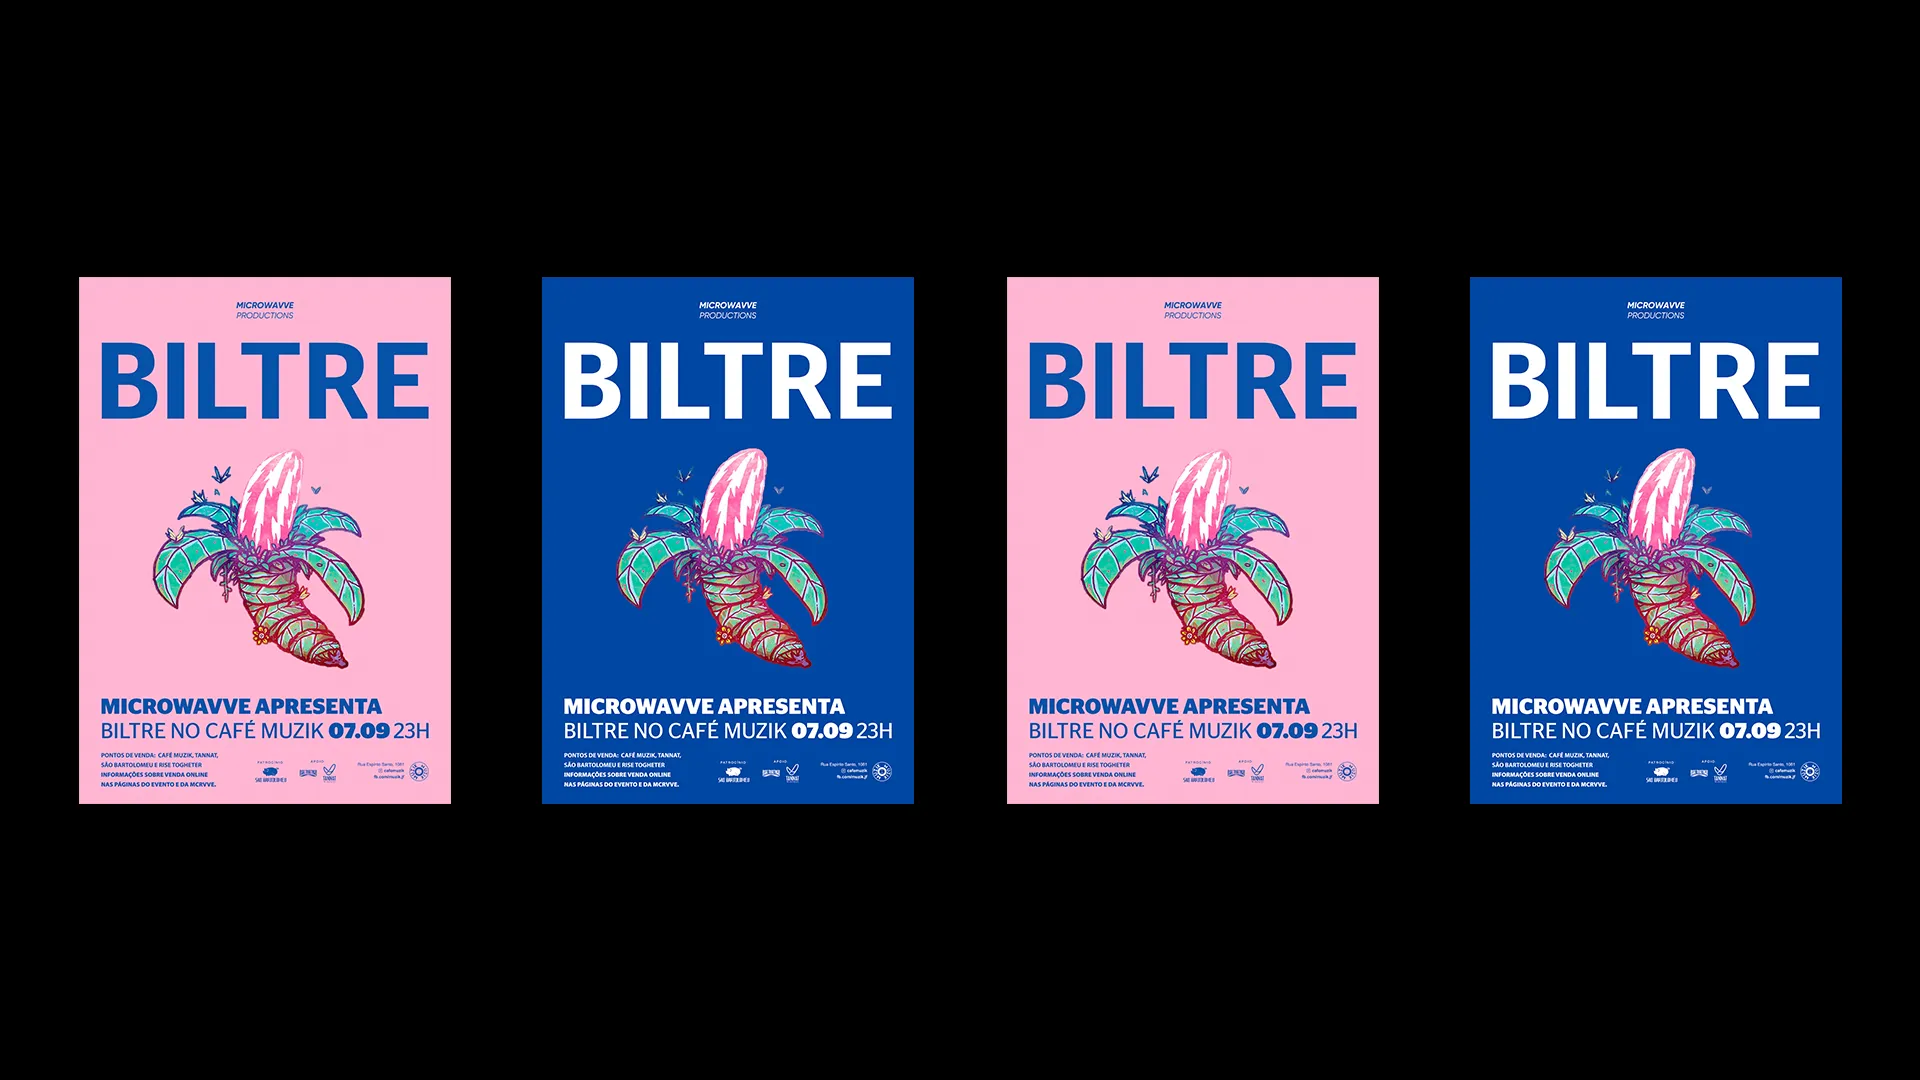 cartazes do show da banda Biltre (Microwavve Productions: BILTRE. Cartaz azul com ilustração de uma banana esquisita feita pelo artista Daniel Sake) alternando, um azul, um rosa, um azul, um rosa